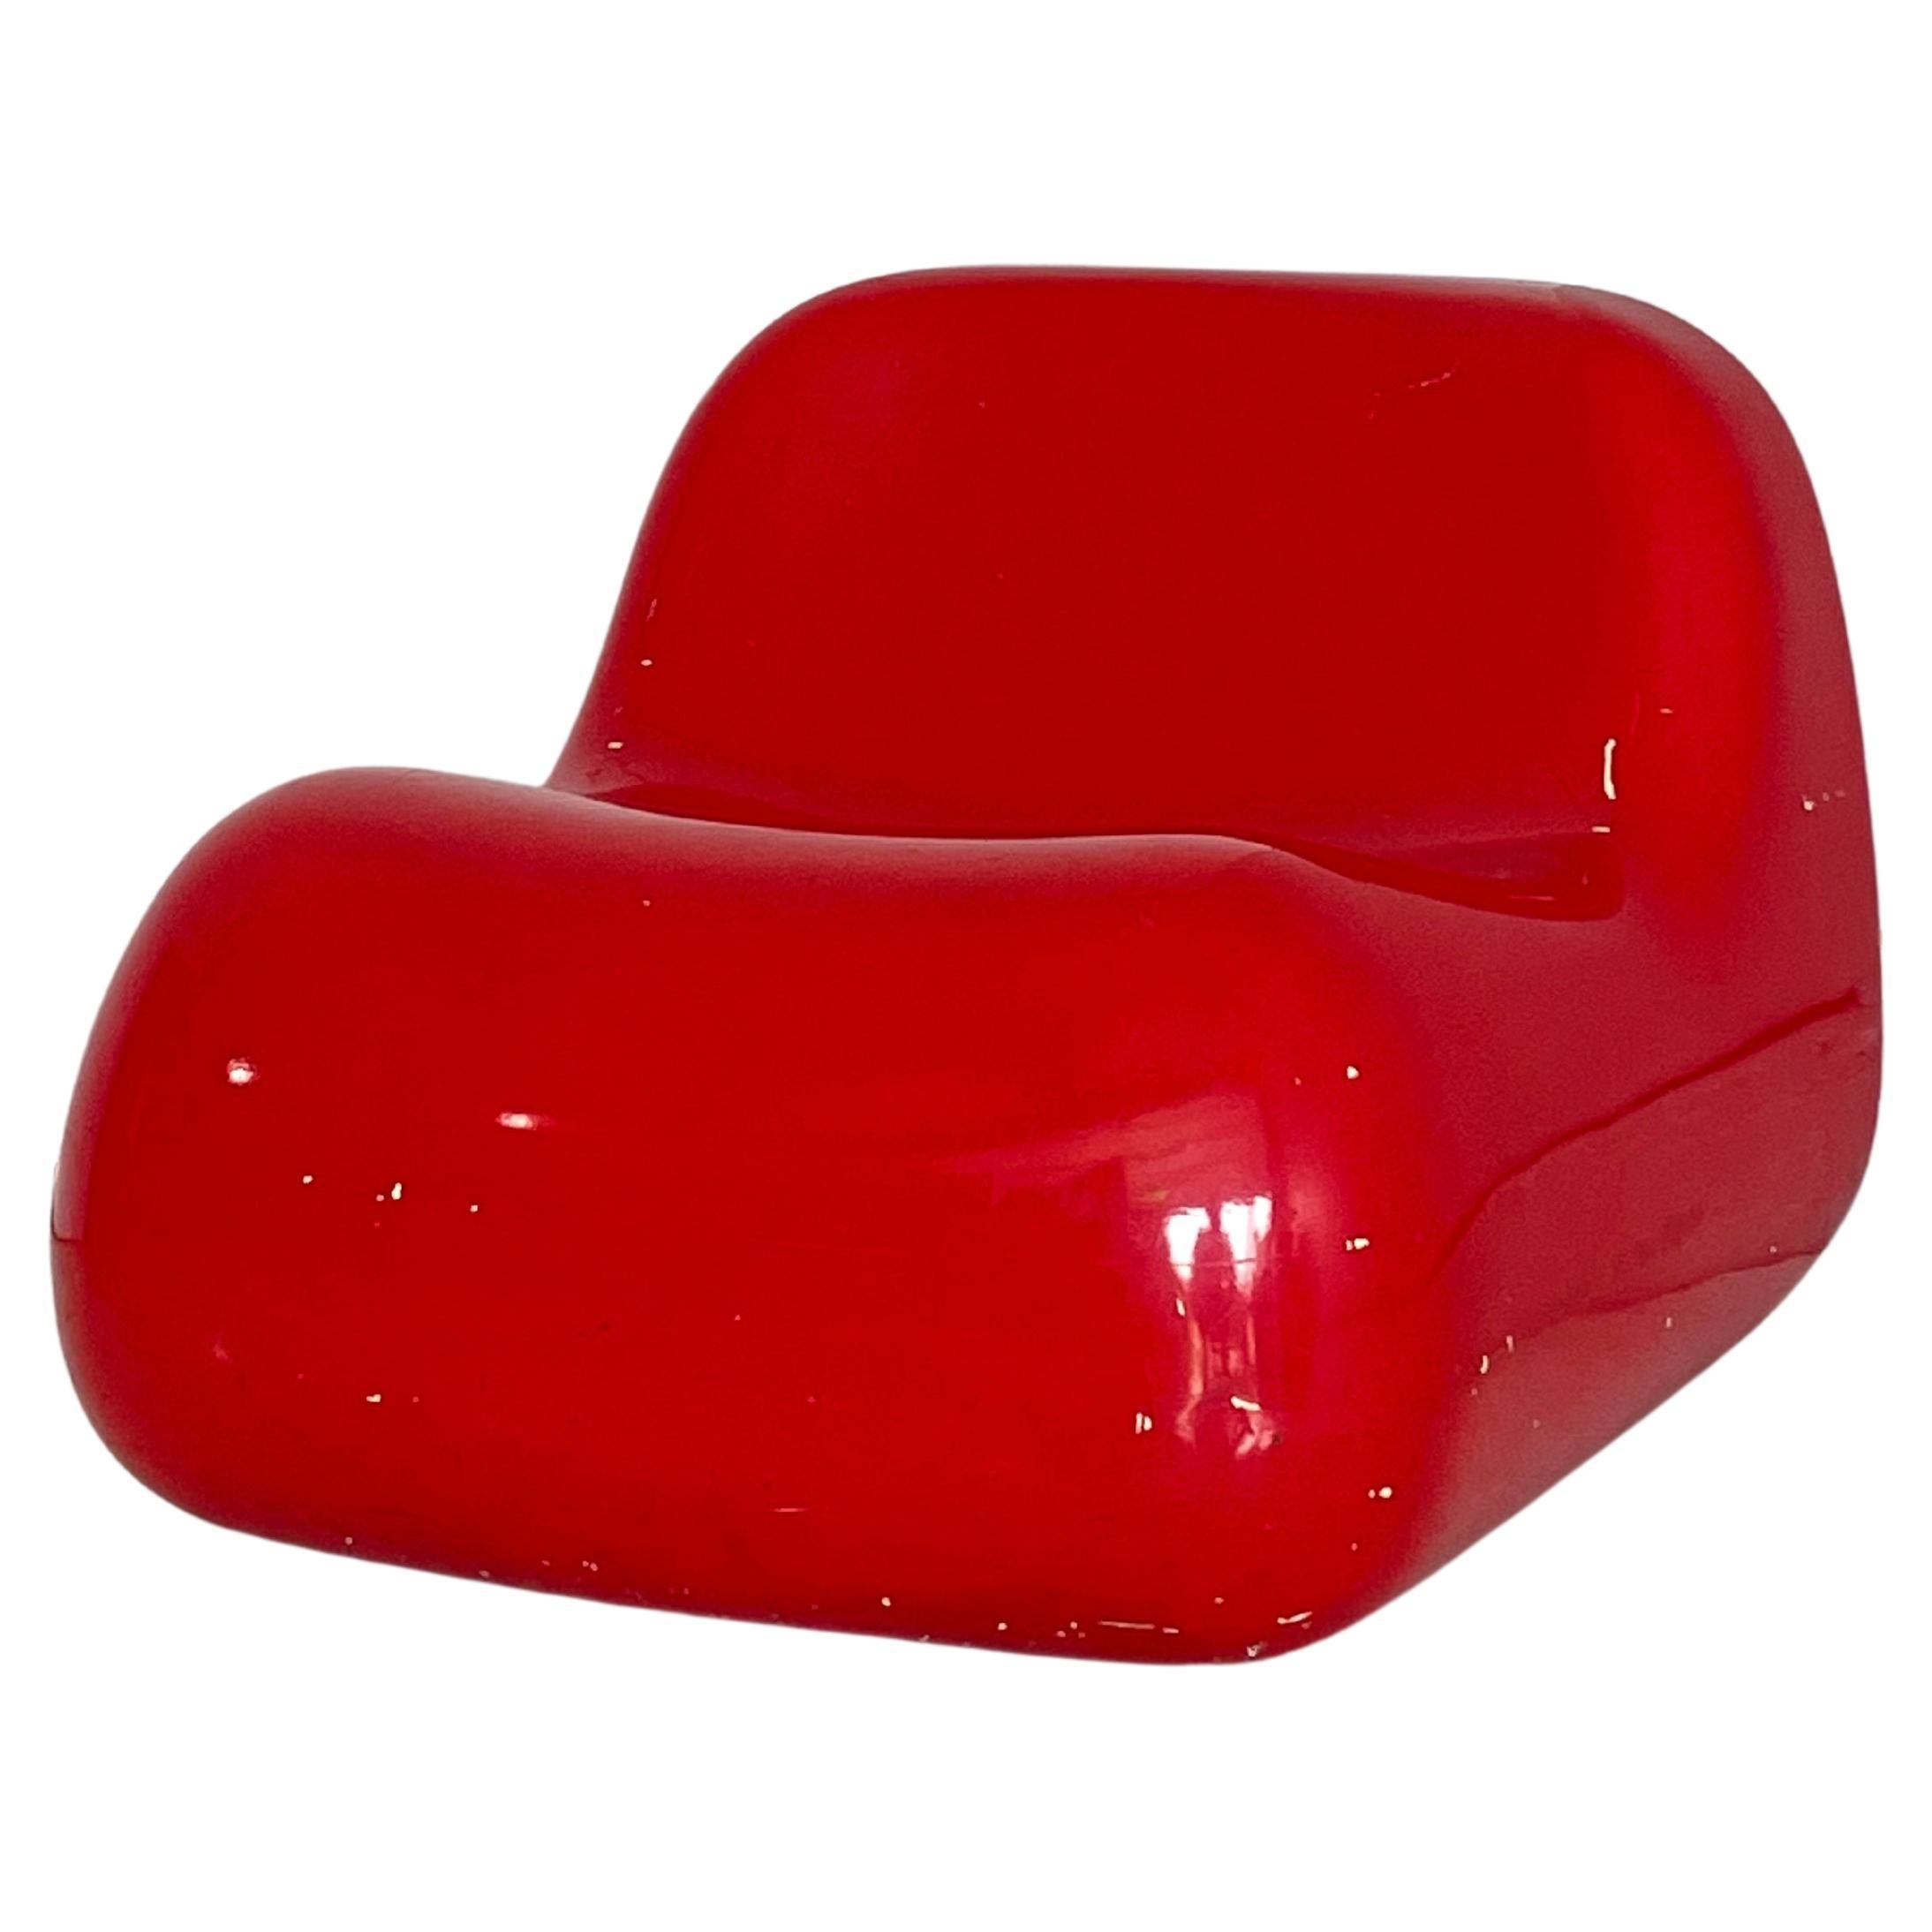 Alberto Rosselli Saporiti Chairs